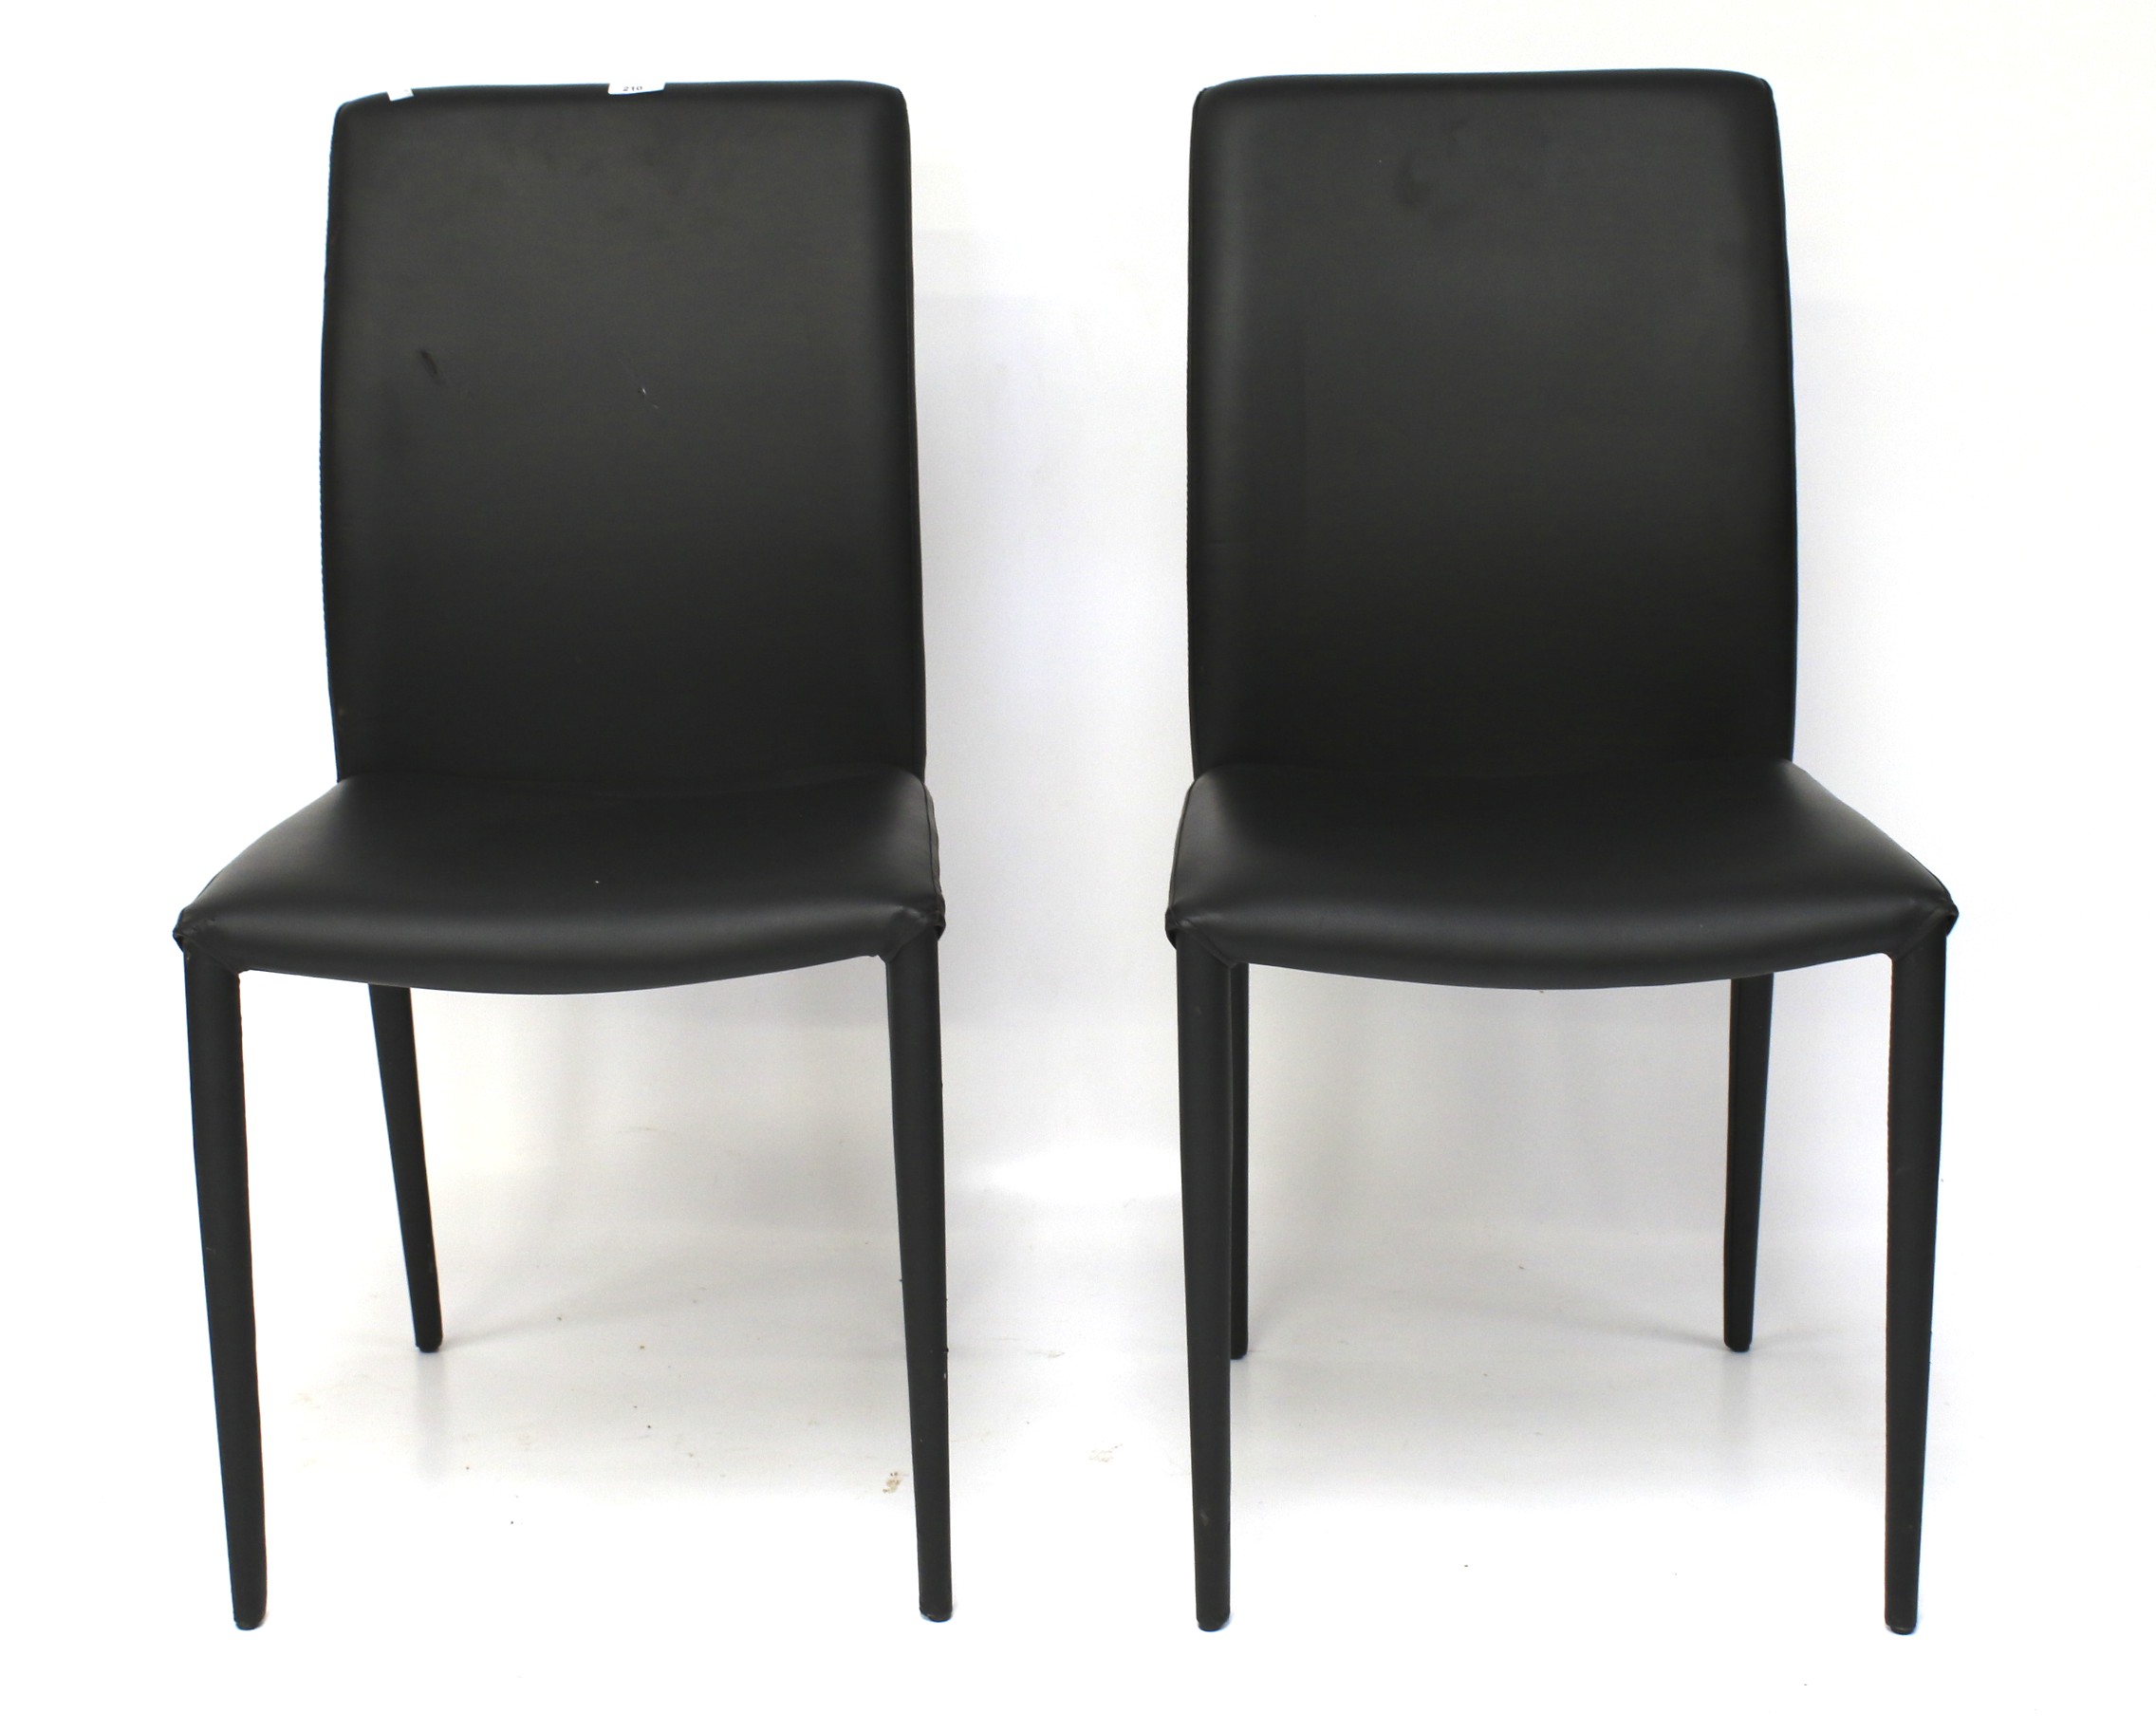 Two 20th century Danish chairs.